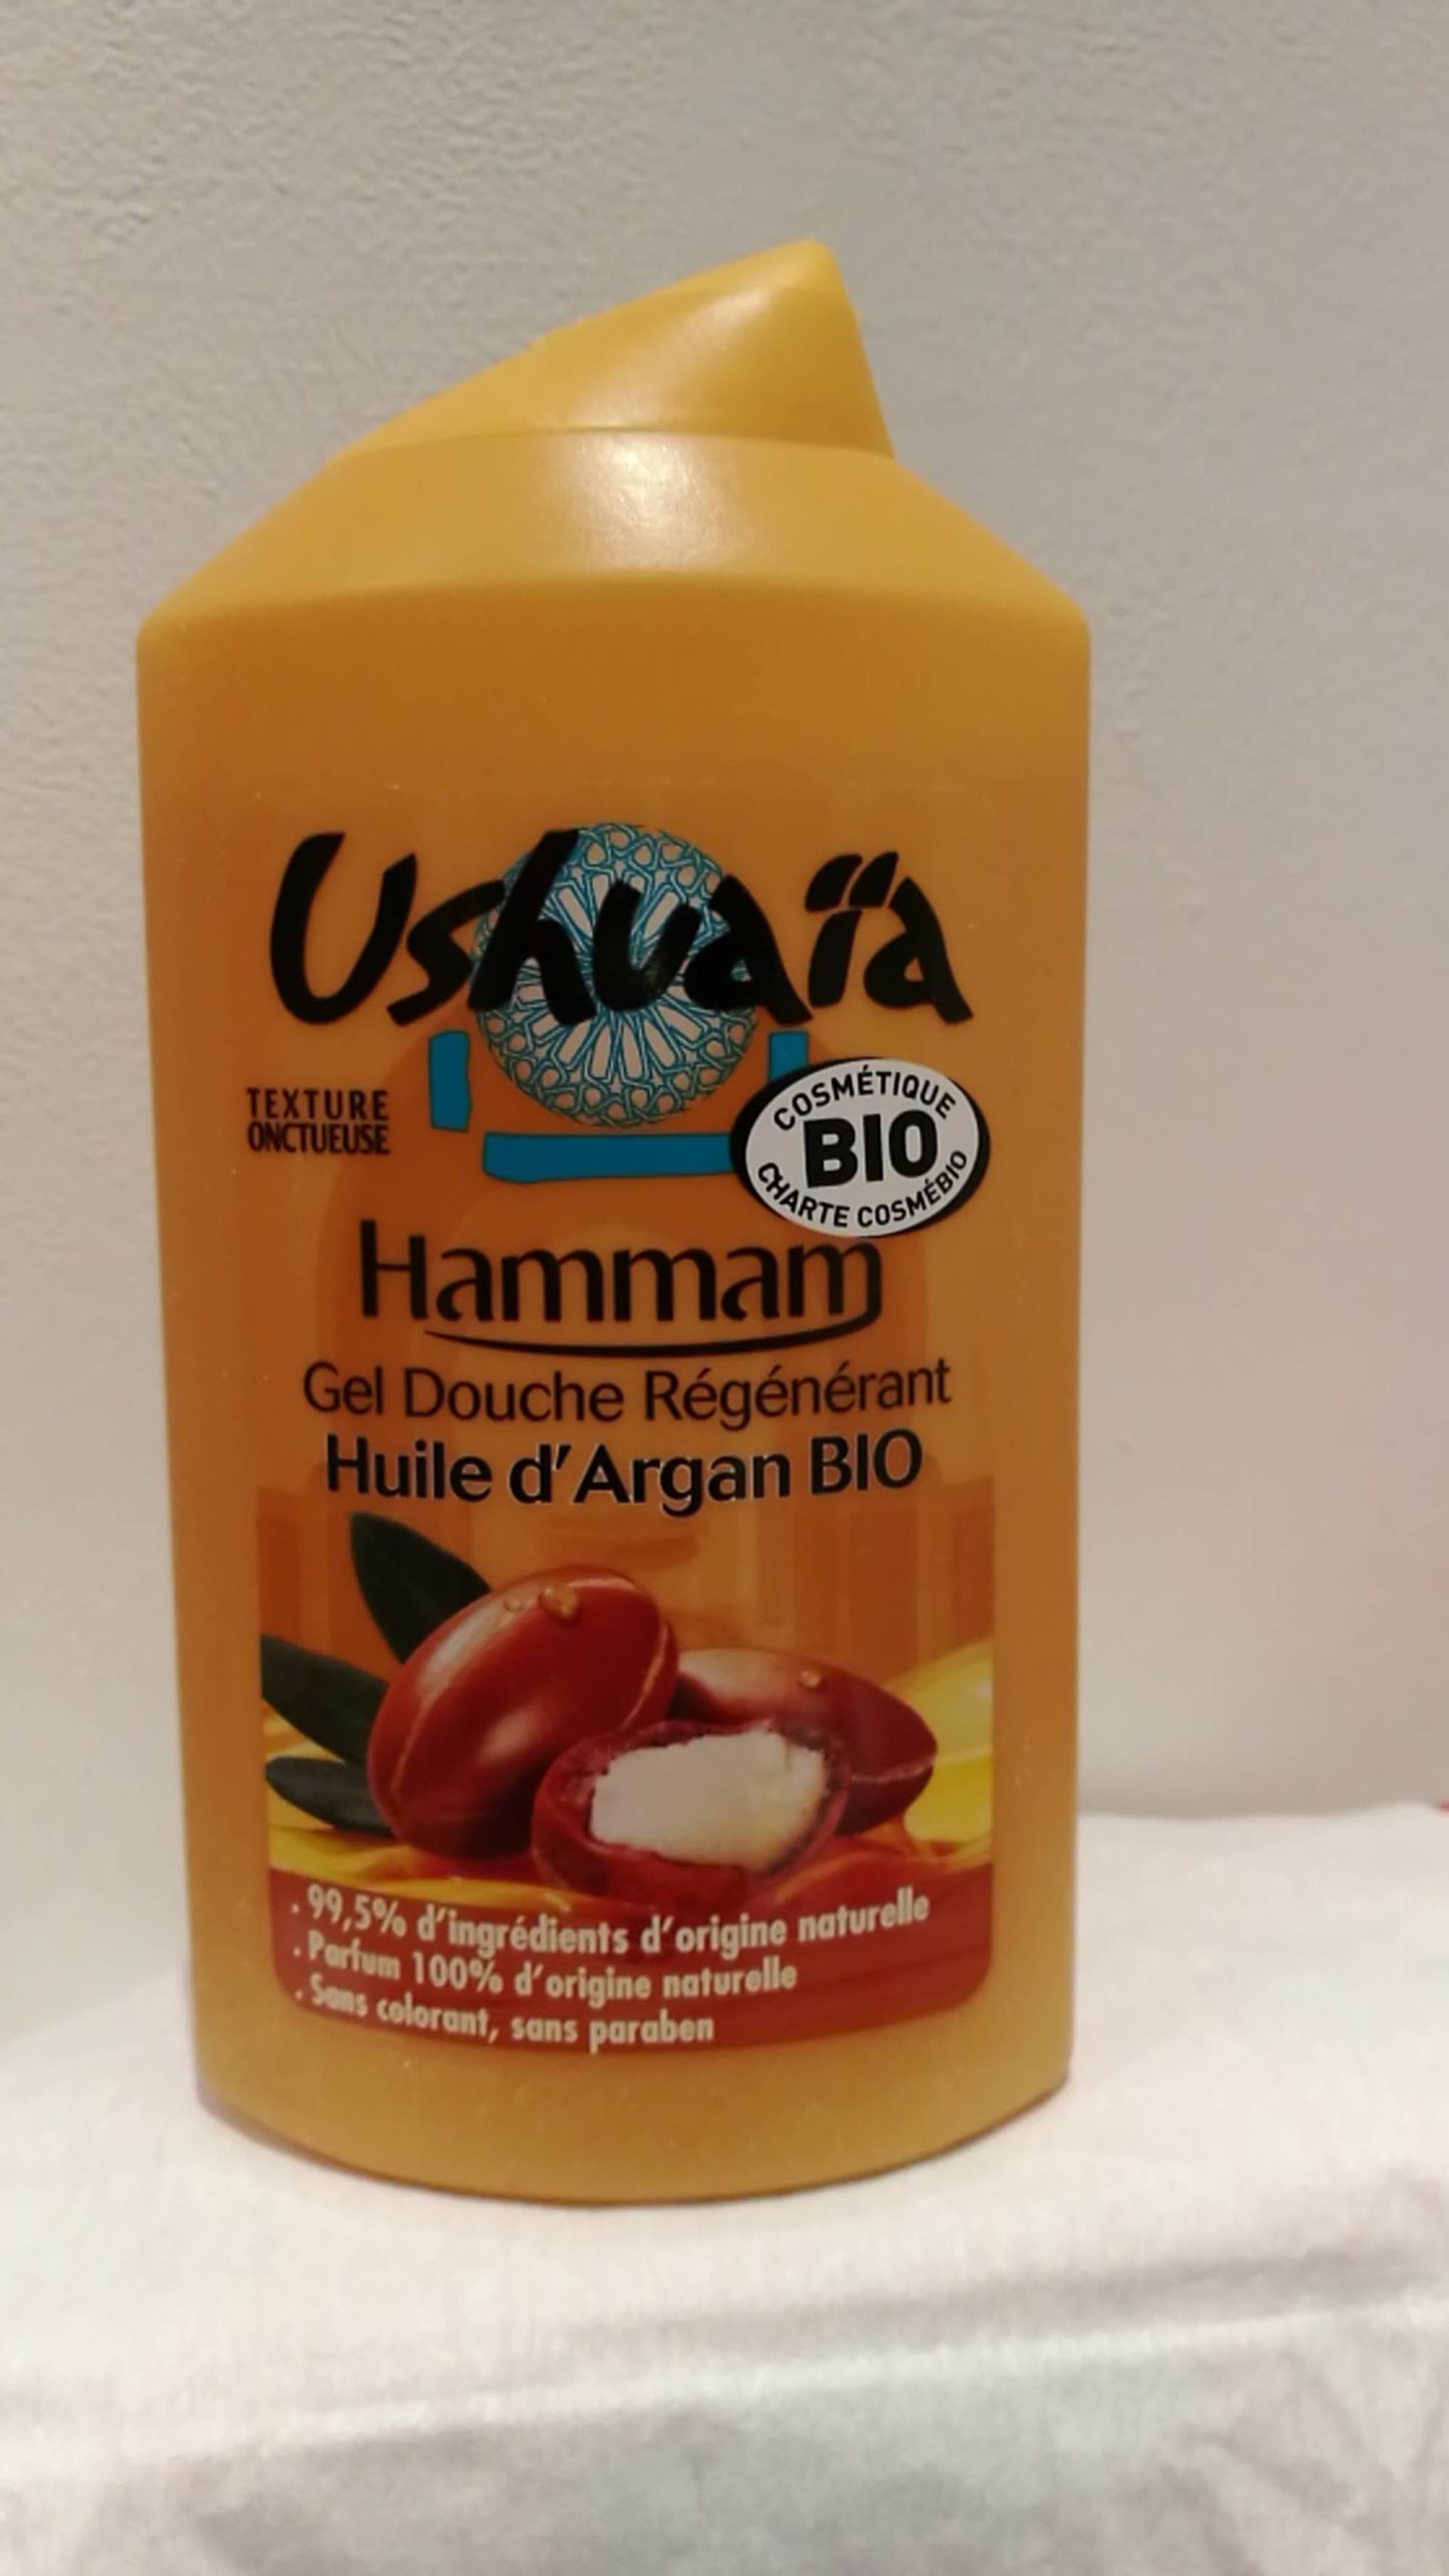 USHUAÏA - Hammam - Gel douche régénérant à l'huile d'argan bio